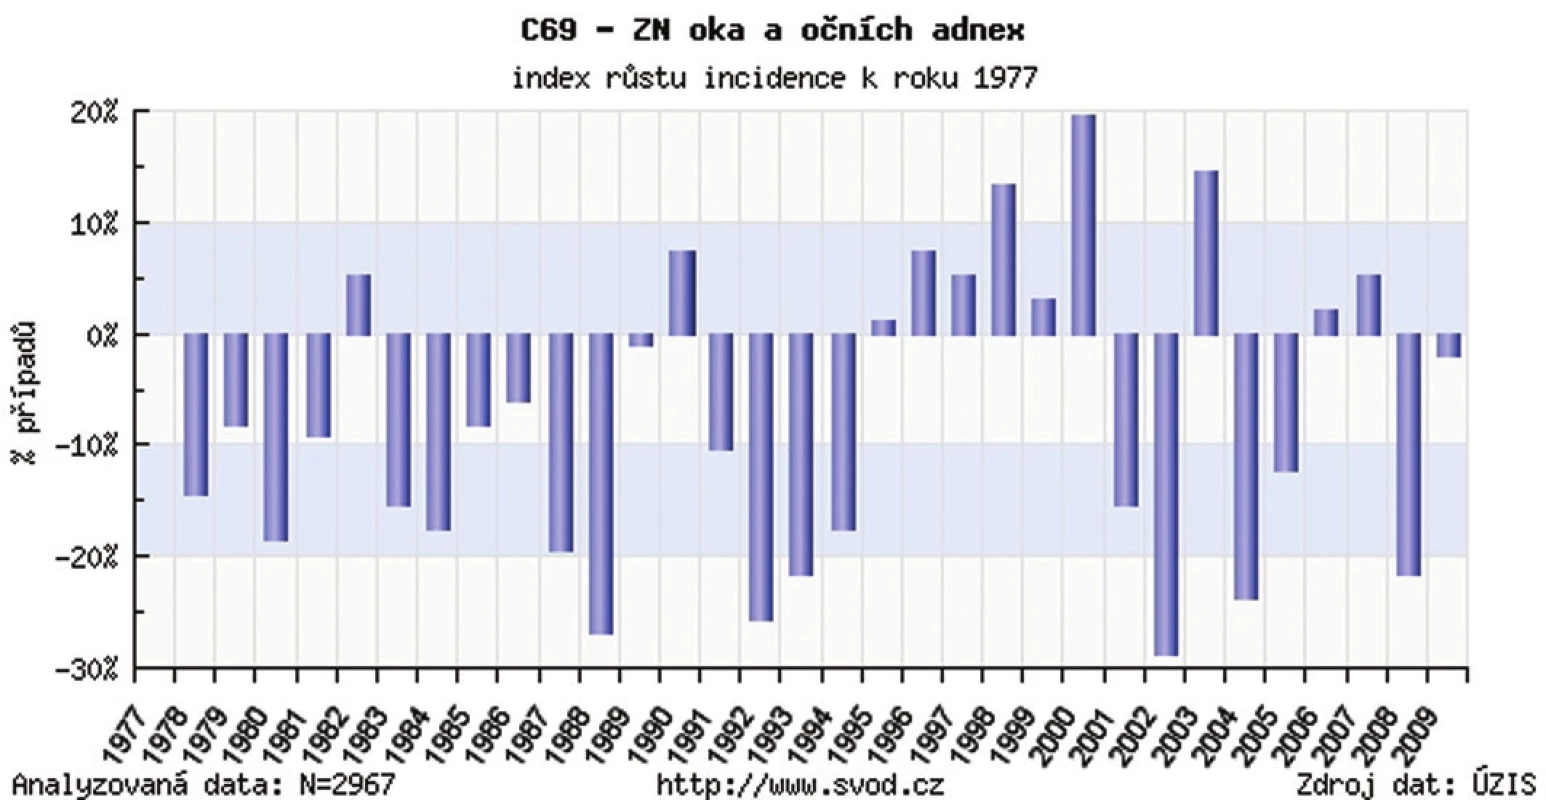 Zhubný nádor oka a adnex v ČR – index rastu incidencie k r. 1977 (výskyt na 100 000 obyvateľov v porovnaní s r. 1977)